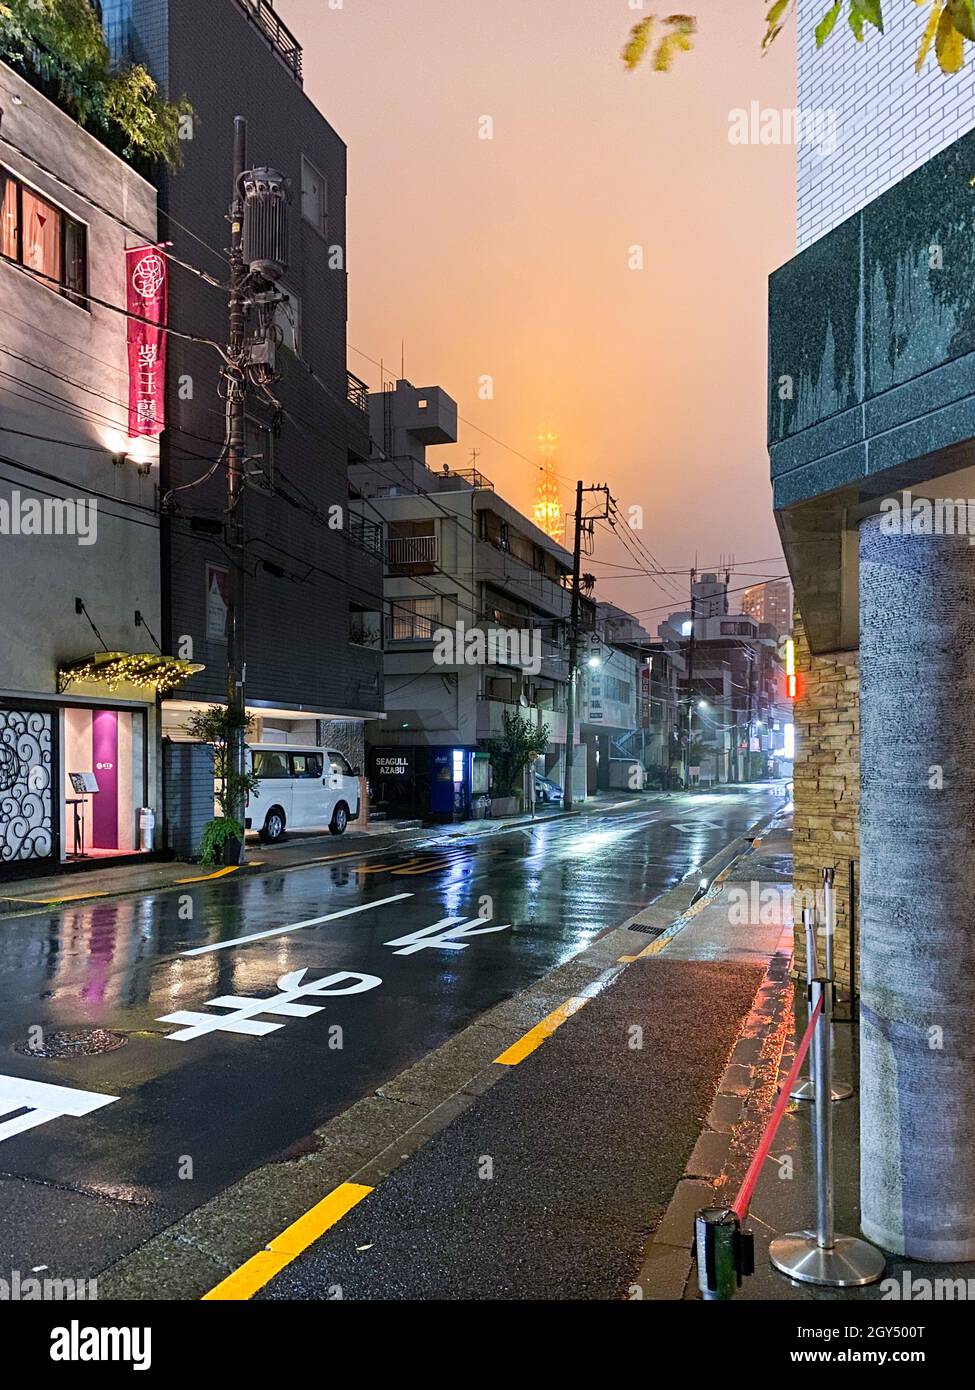 Tokio, Japón - 17 de noviembre de 2019: Noche lluviosa escena de la calle Tokio Foto de stock